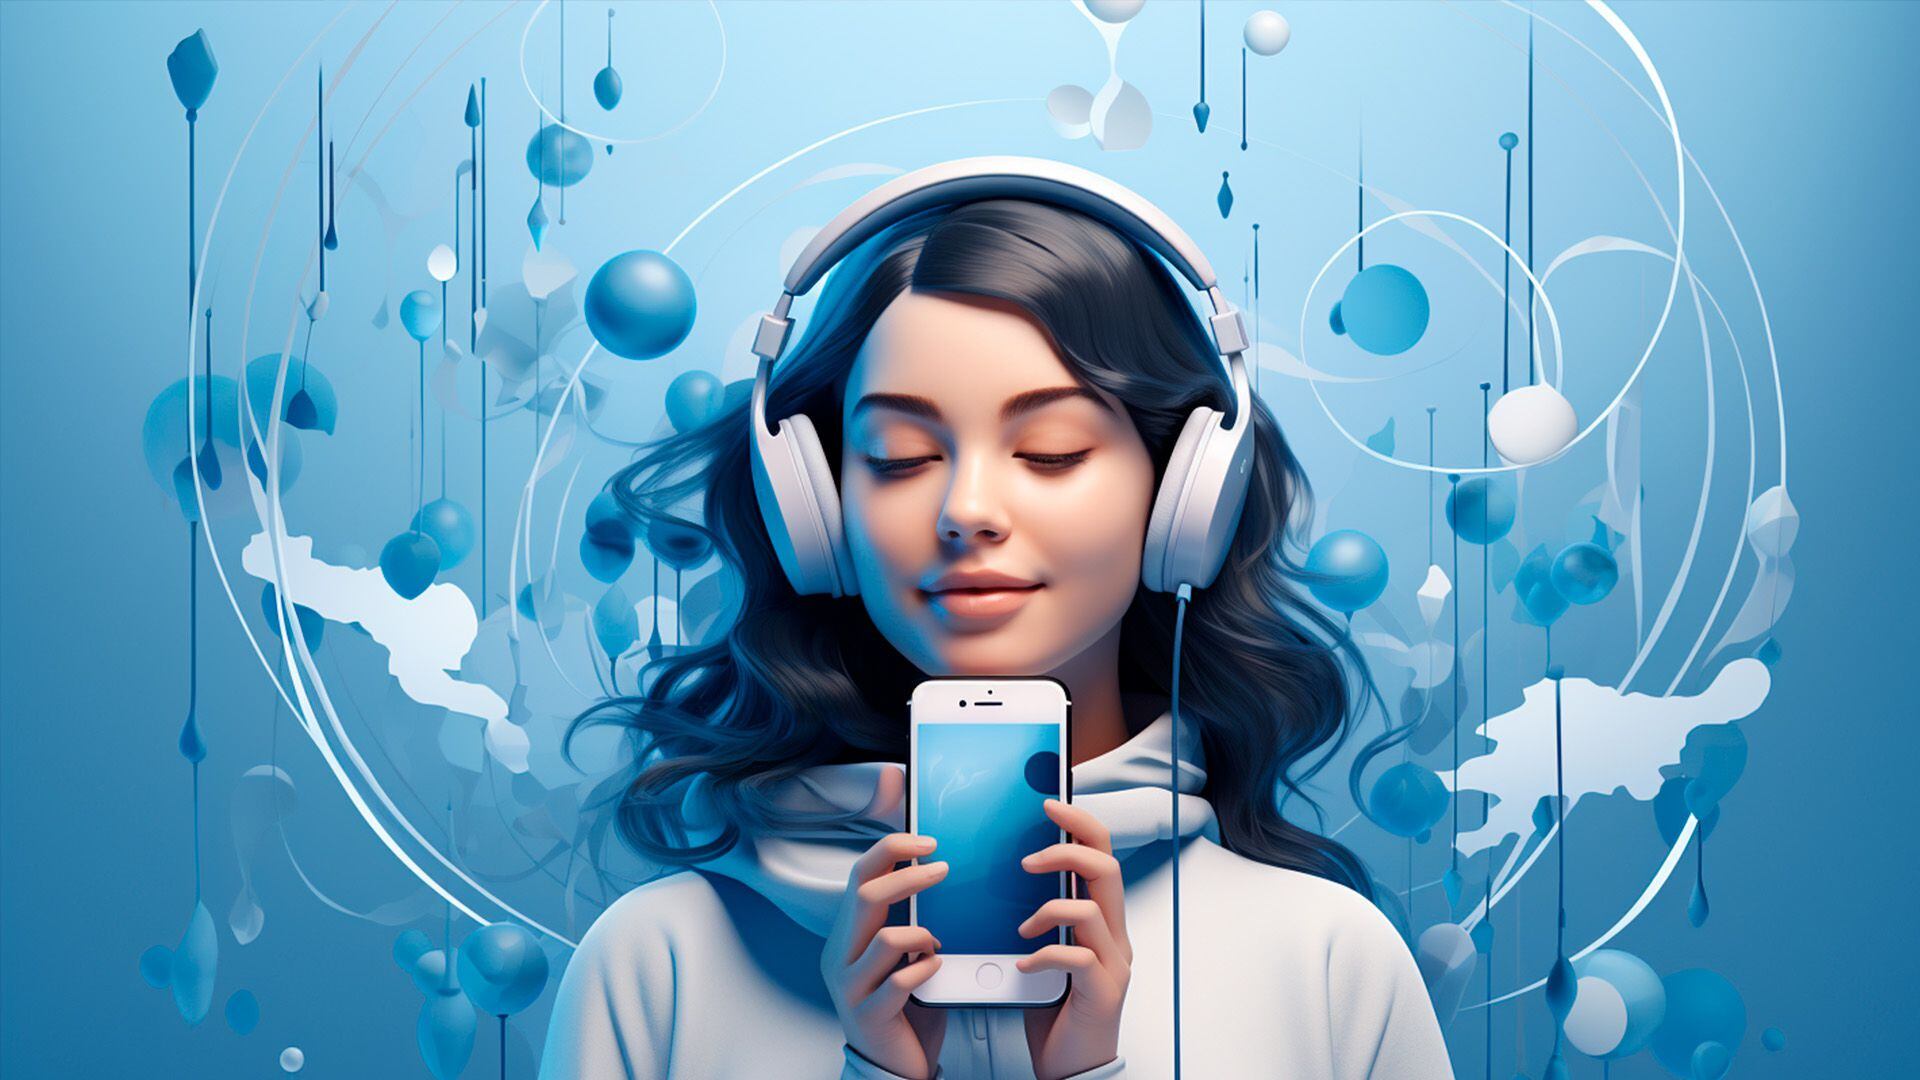 Plataforma Shazam para música Identificar canciones en segundos Encuentra tus canciones favoritas Aplicación innovadora para música (Imagen ilustrativa Infobae) - visualesIA